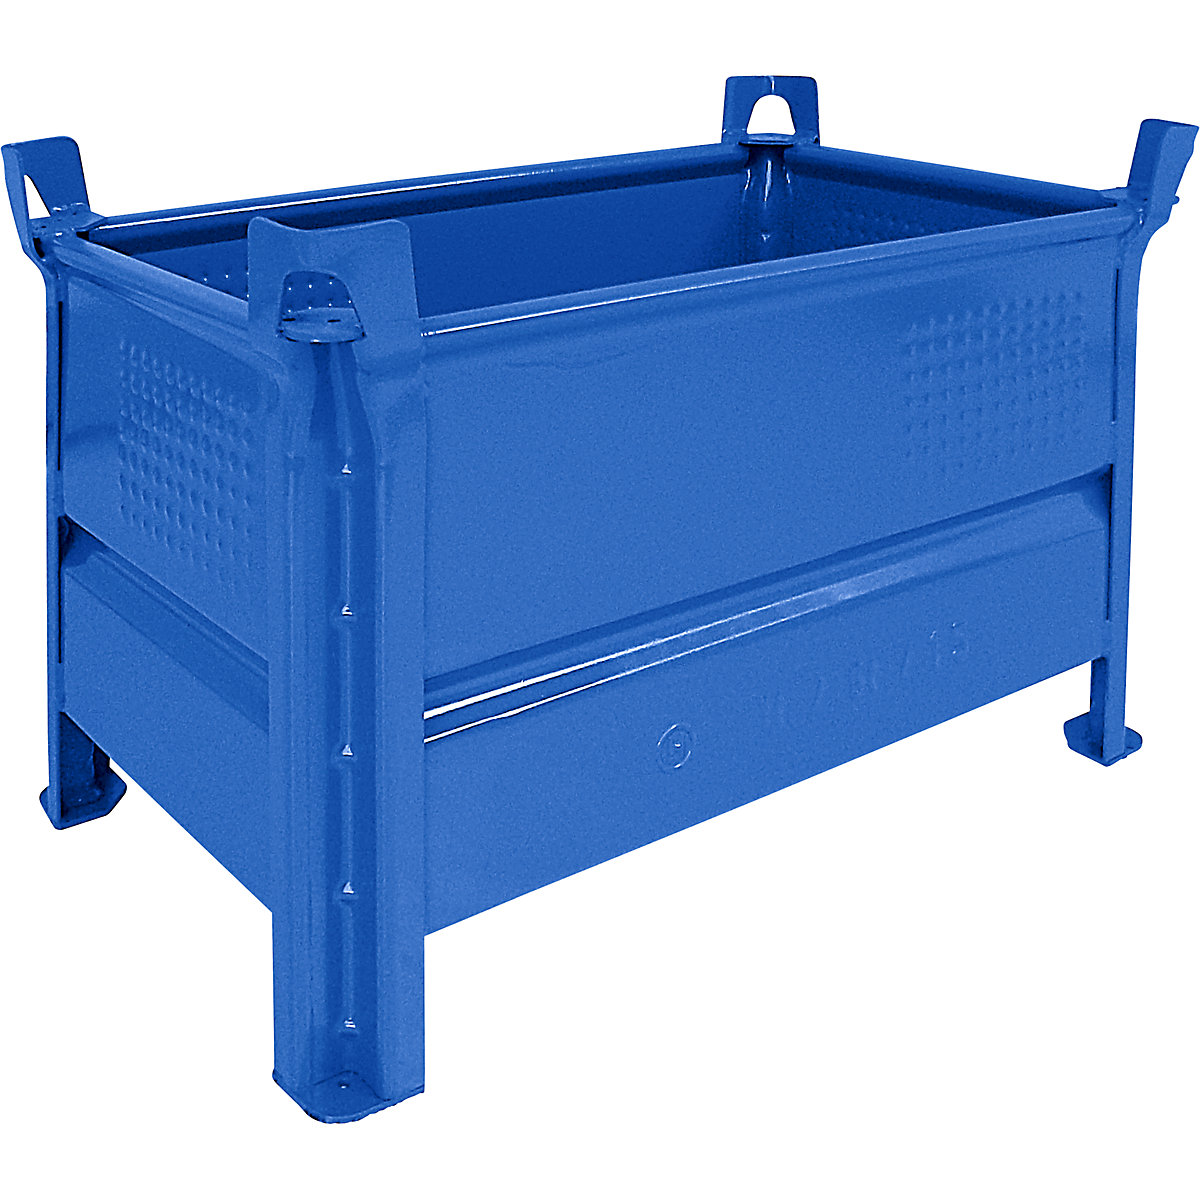 Pojemnik do ustawiania w stos z pełnymi ściankami – Heson, szer. x dł. 500 x 800 mm, nośność 500 kg, niebieski, od 5 szt.-5